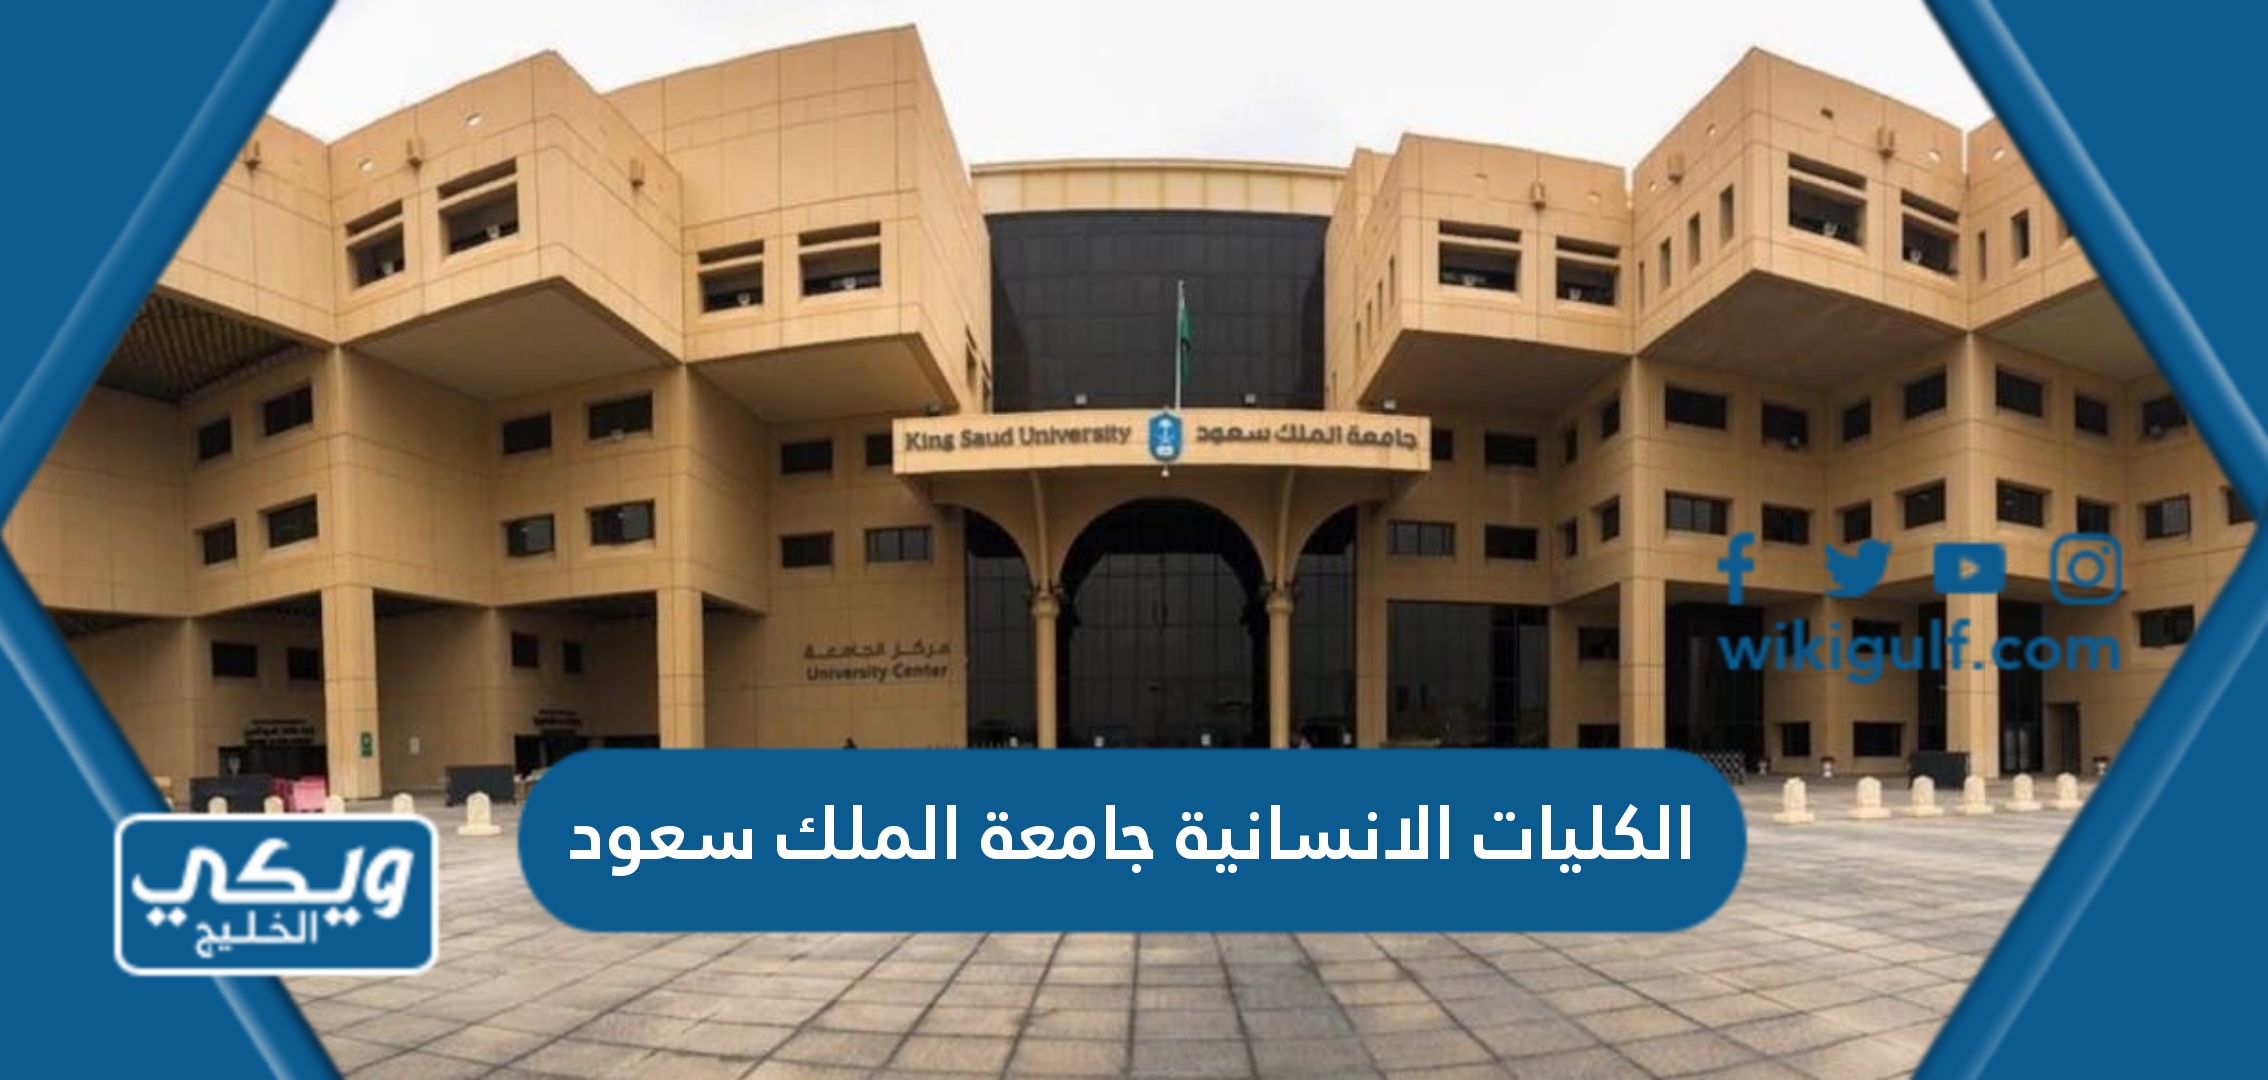 الكليات الانسانية جامعة الملك سعود